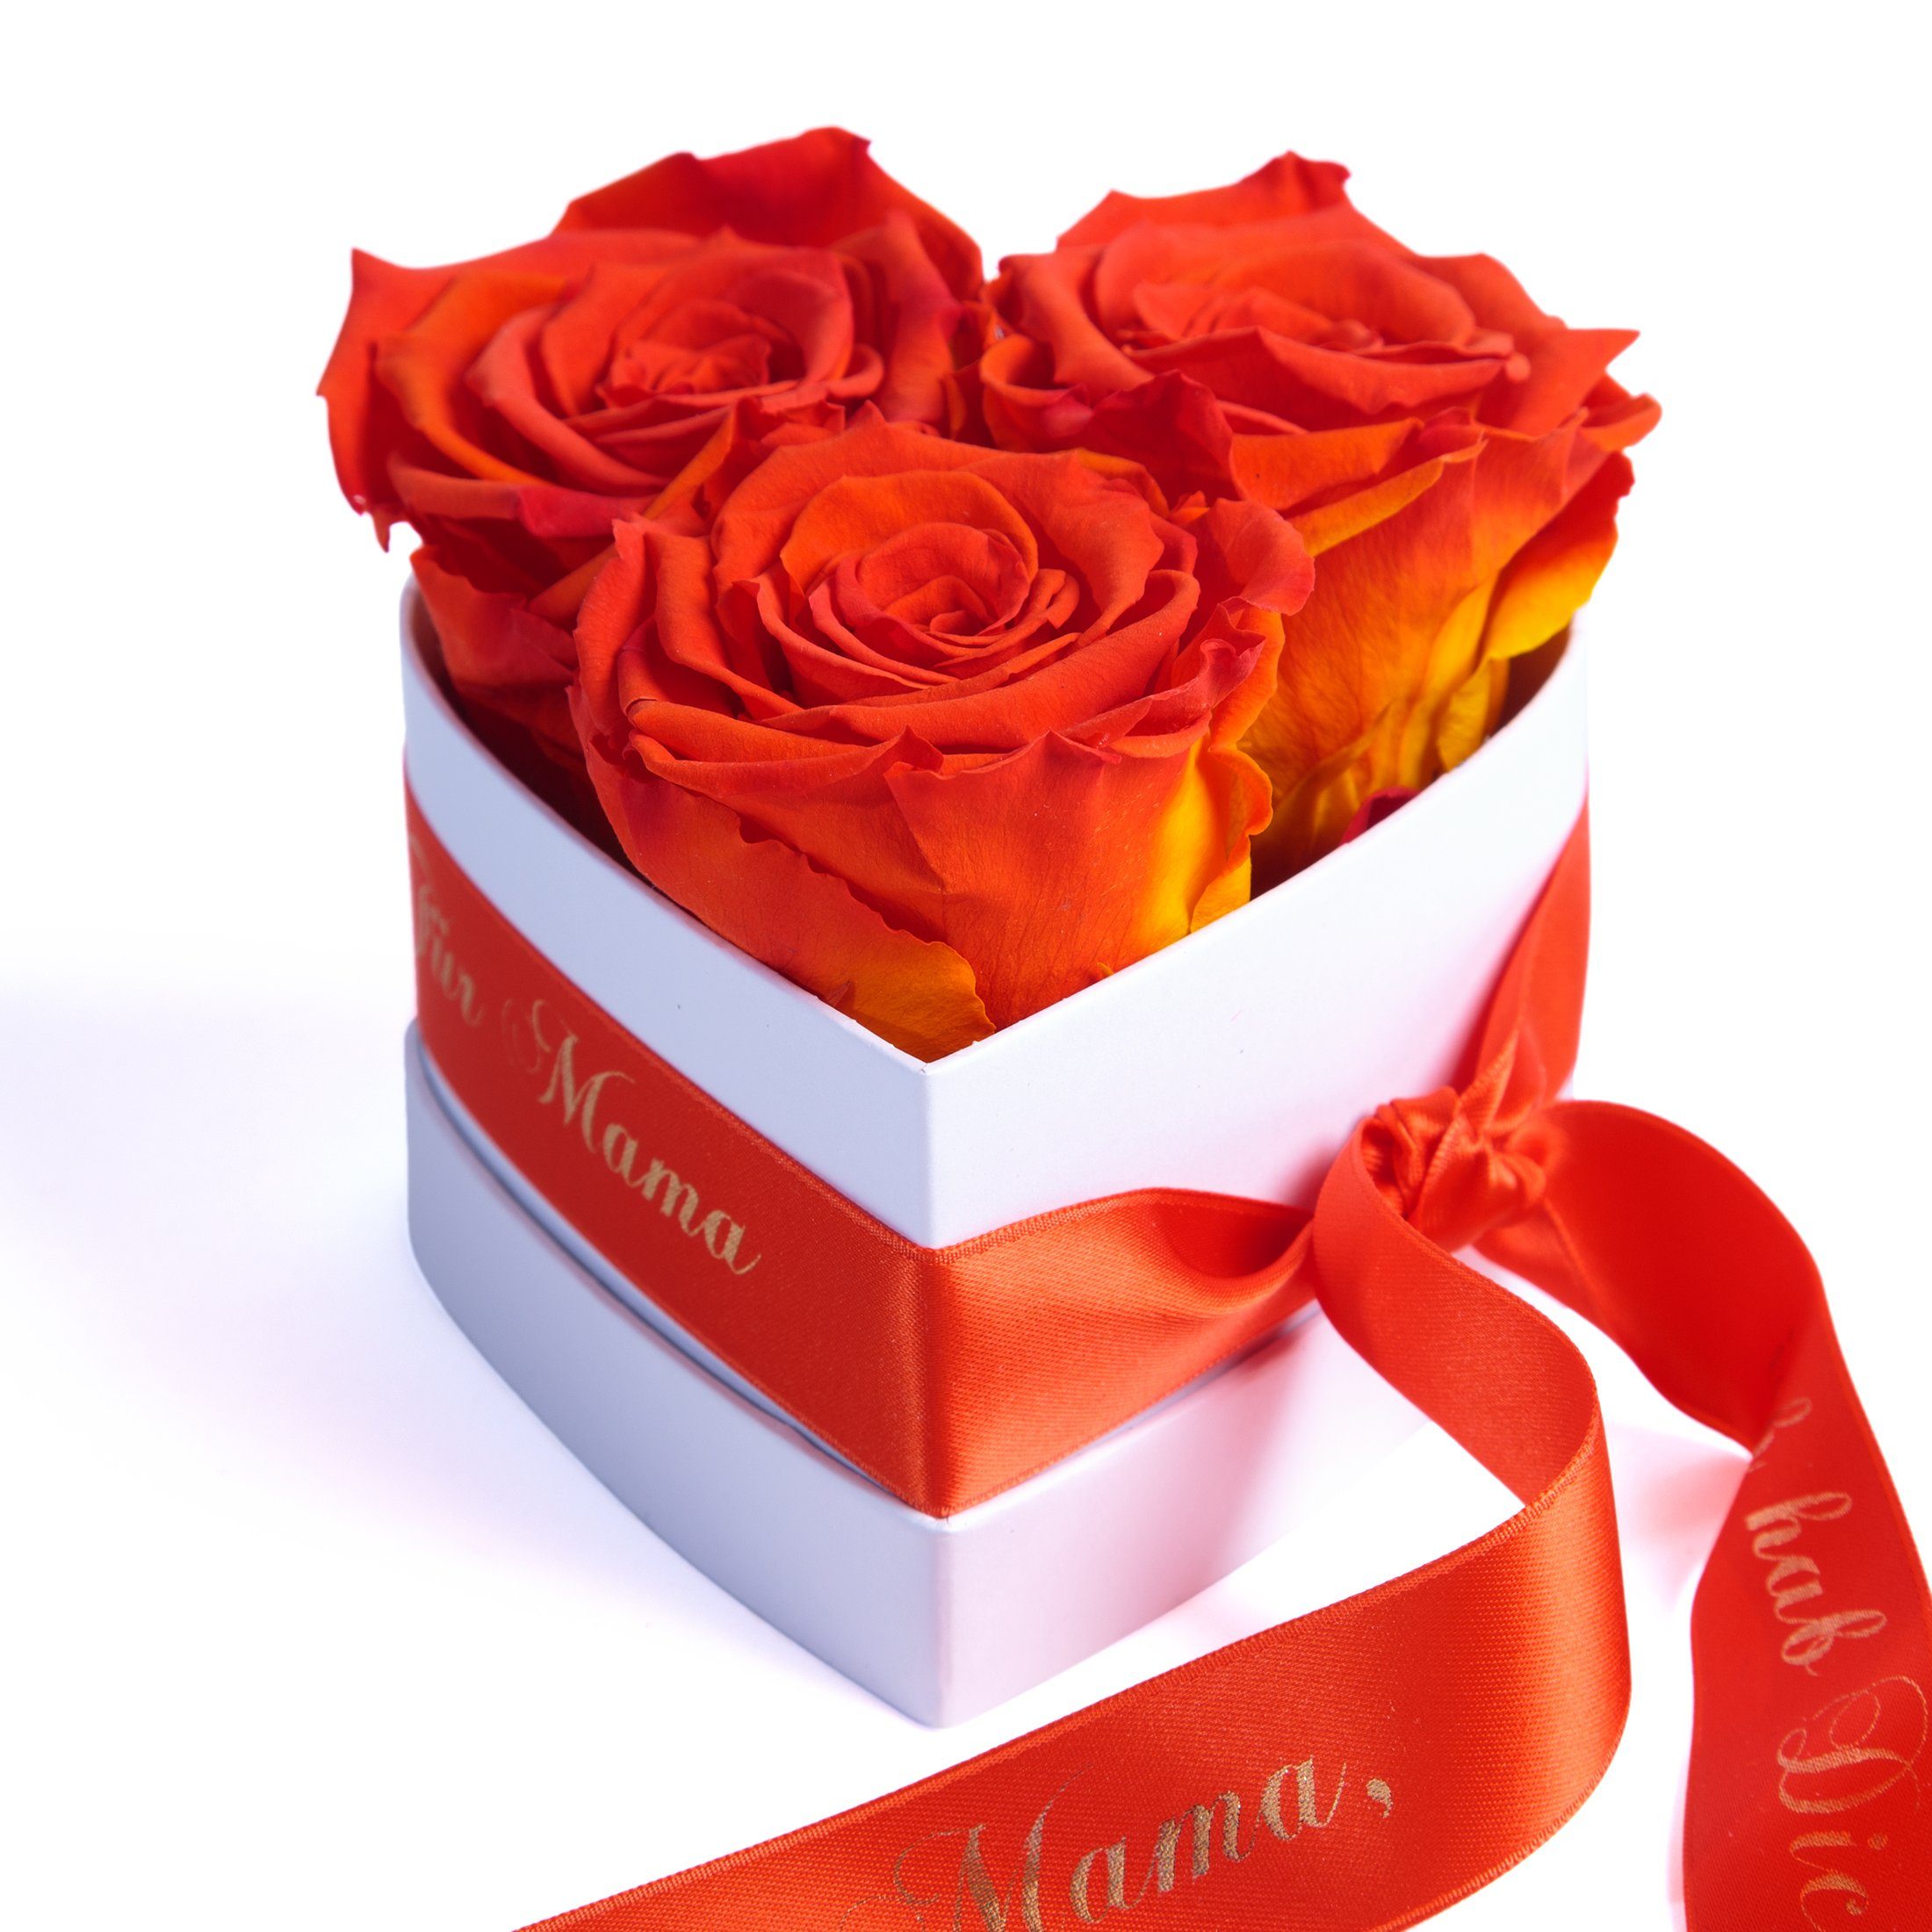 Kunstblume Rosenbox Herz 3 Infinity Rosen Mama, ich hab Dich lieb Geschenk Rose, ROSEMARIE SCHULZ Heidelberg, Höhe 10 cm, echte Rosen haltbar bis zu 3 Jahre Orange